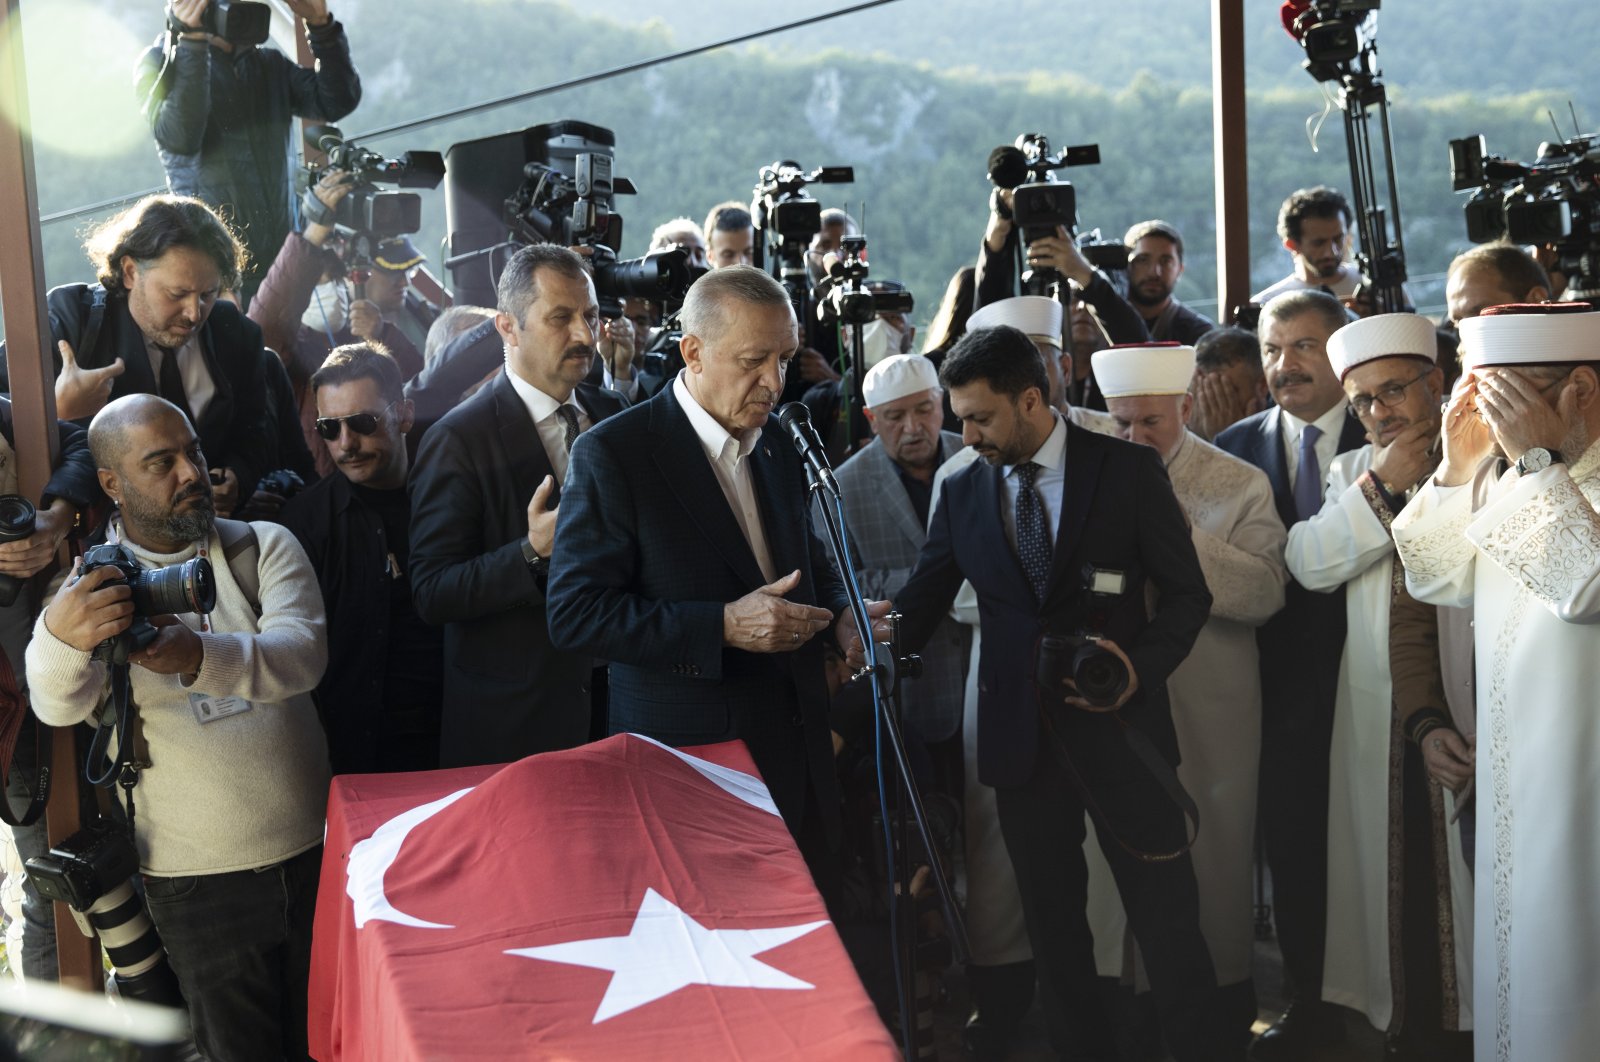 Presiden Erdoğan ‘bersyukur’ atas solidaritas internasional dalam insiden ranjau